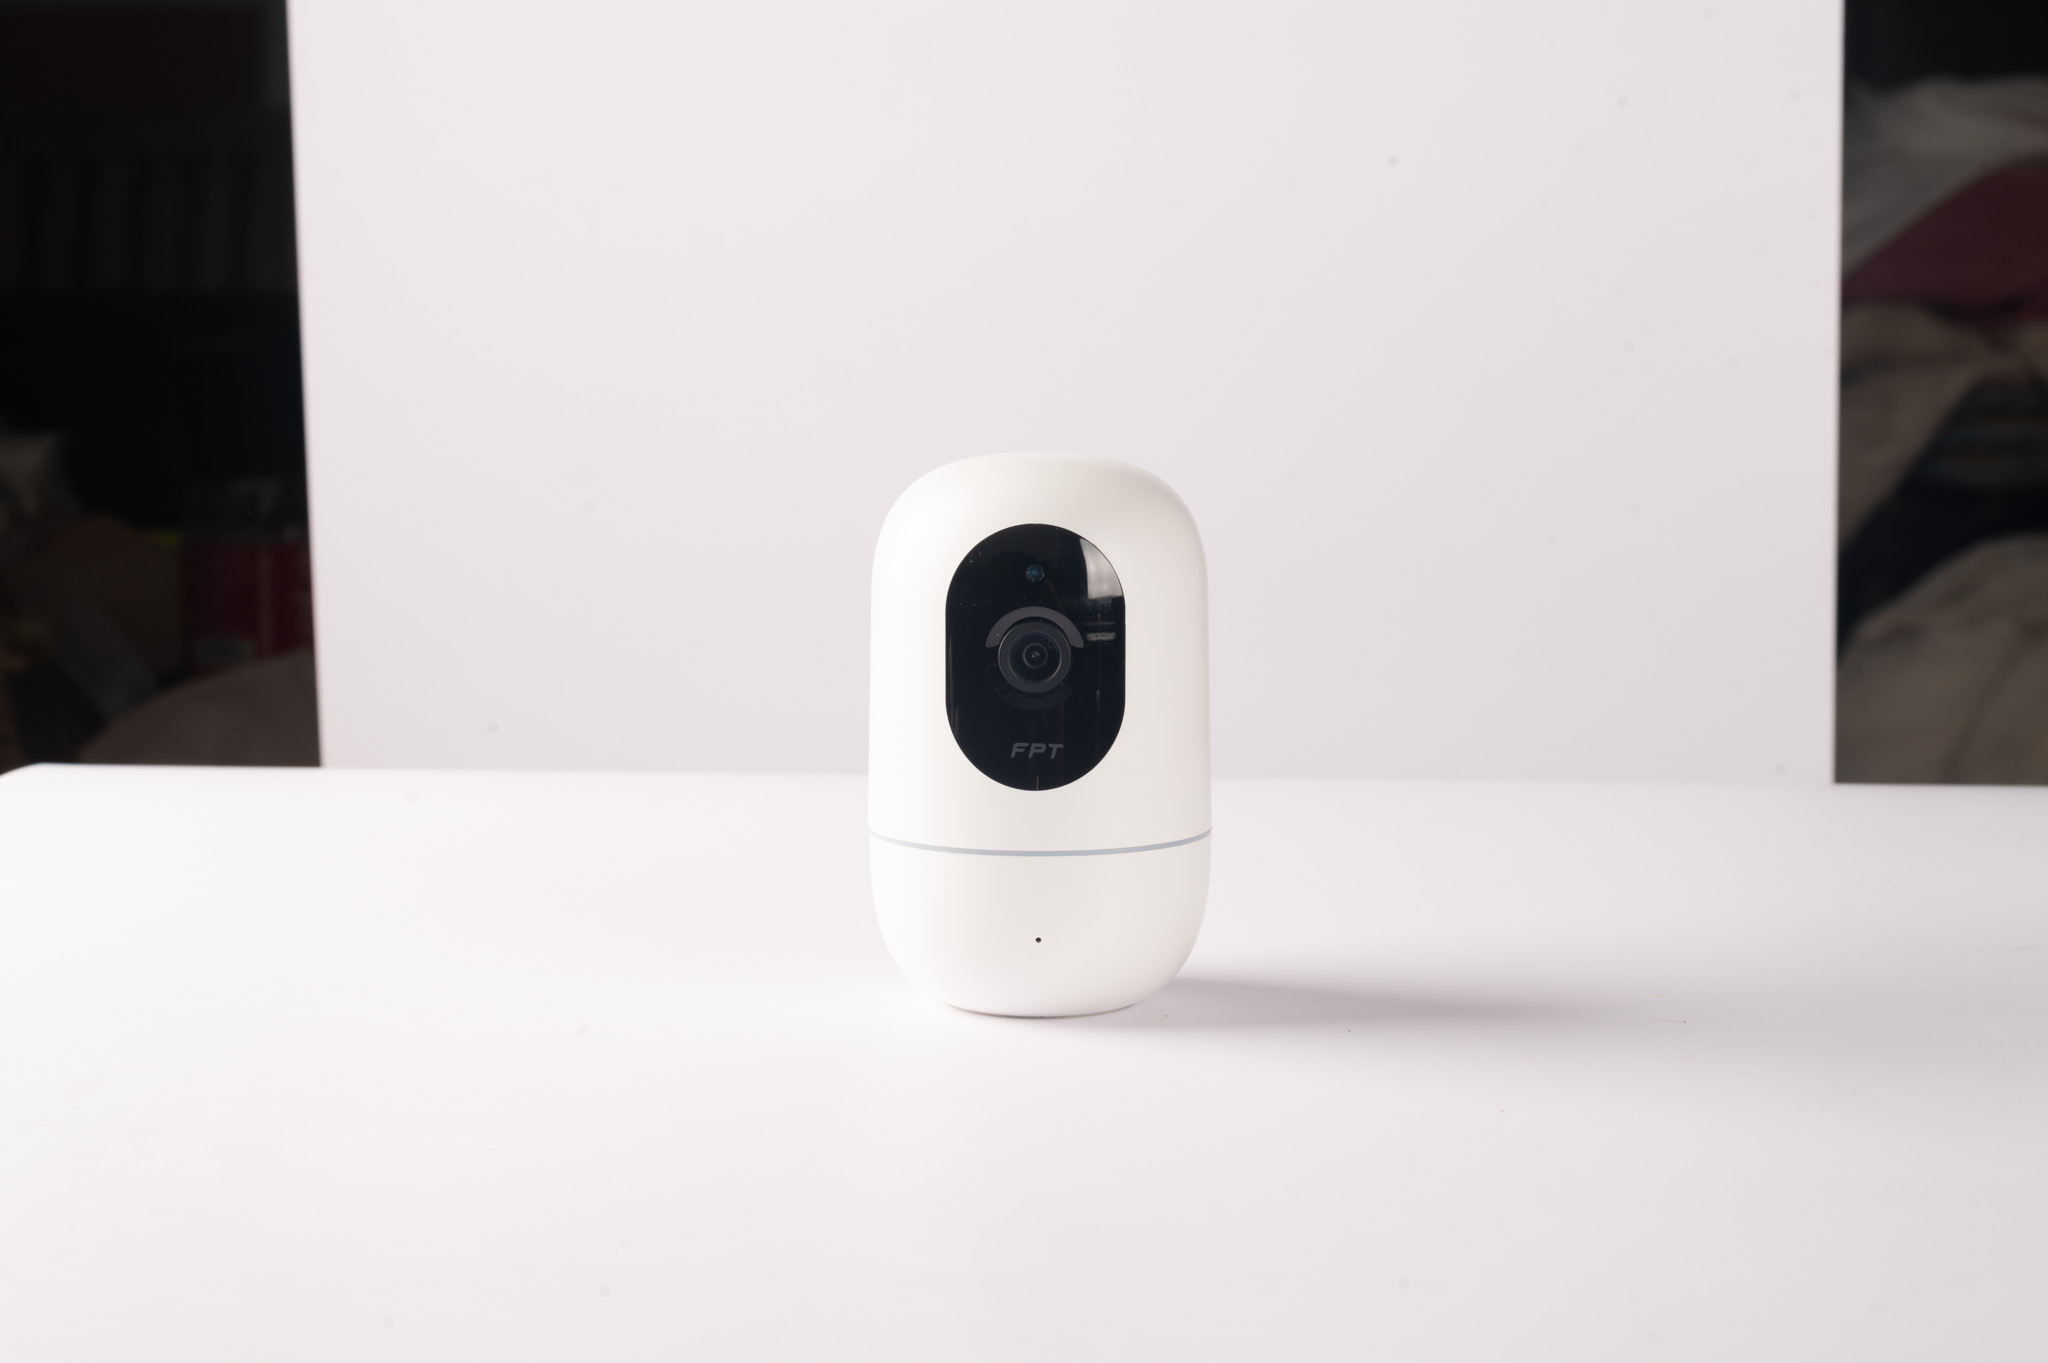 Ra mắt camera an ninh mới sở hữu thiết kế khác biệt và công nghệ nhận diện thông minh AI